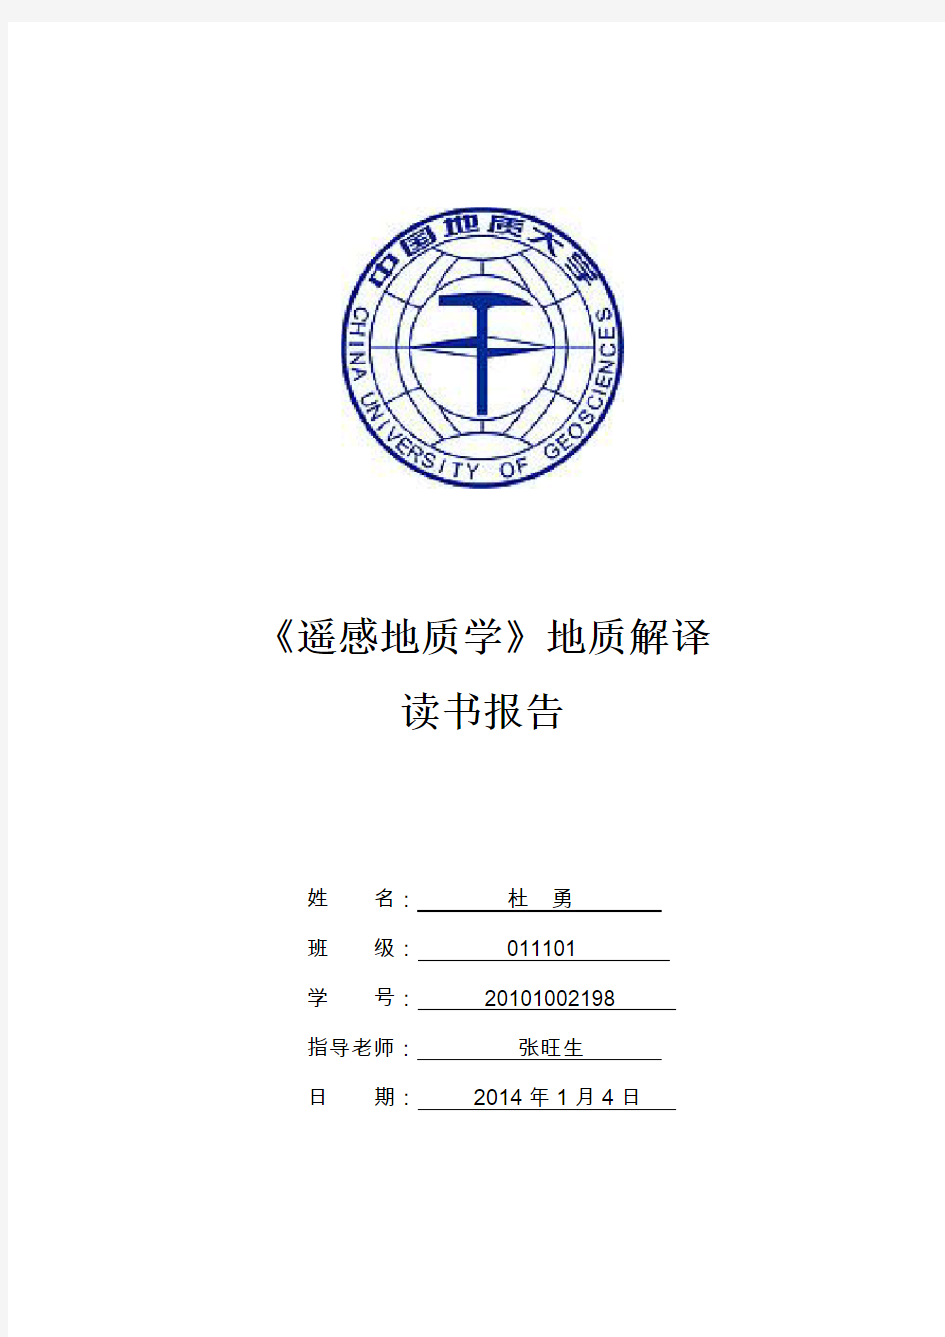 遥感地质学读书报告-中国地质大学(武汉)